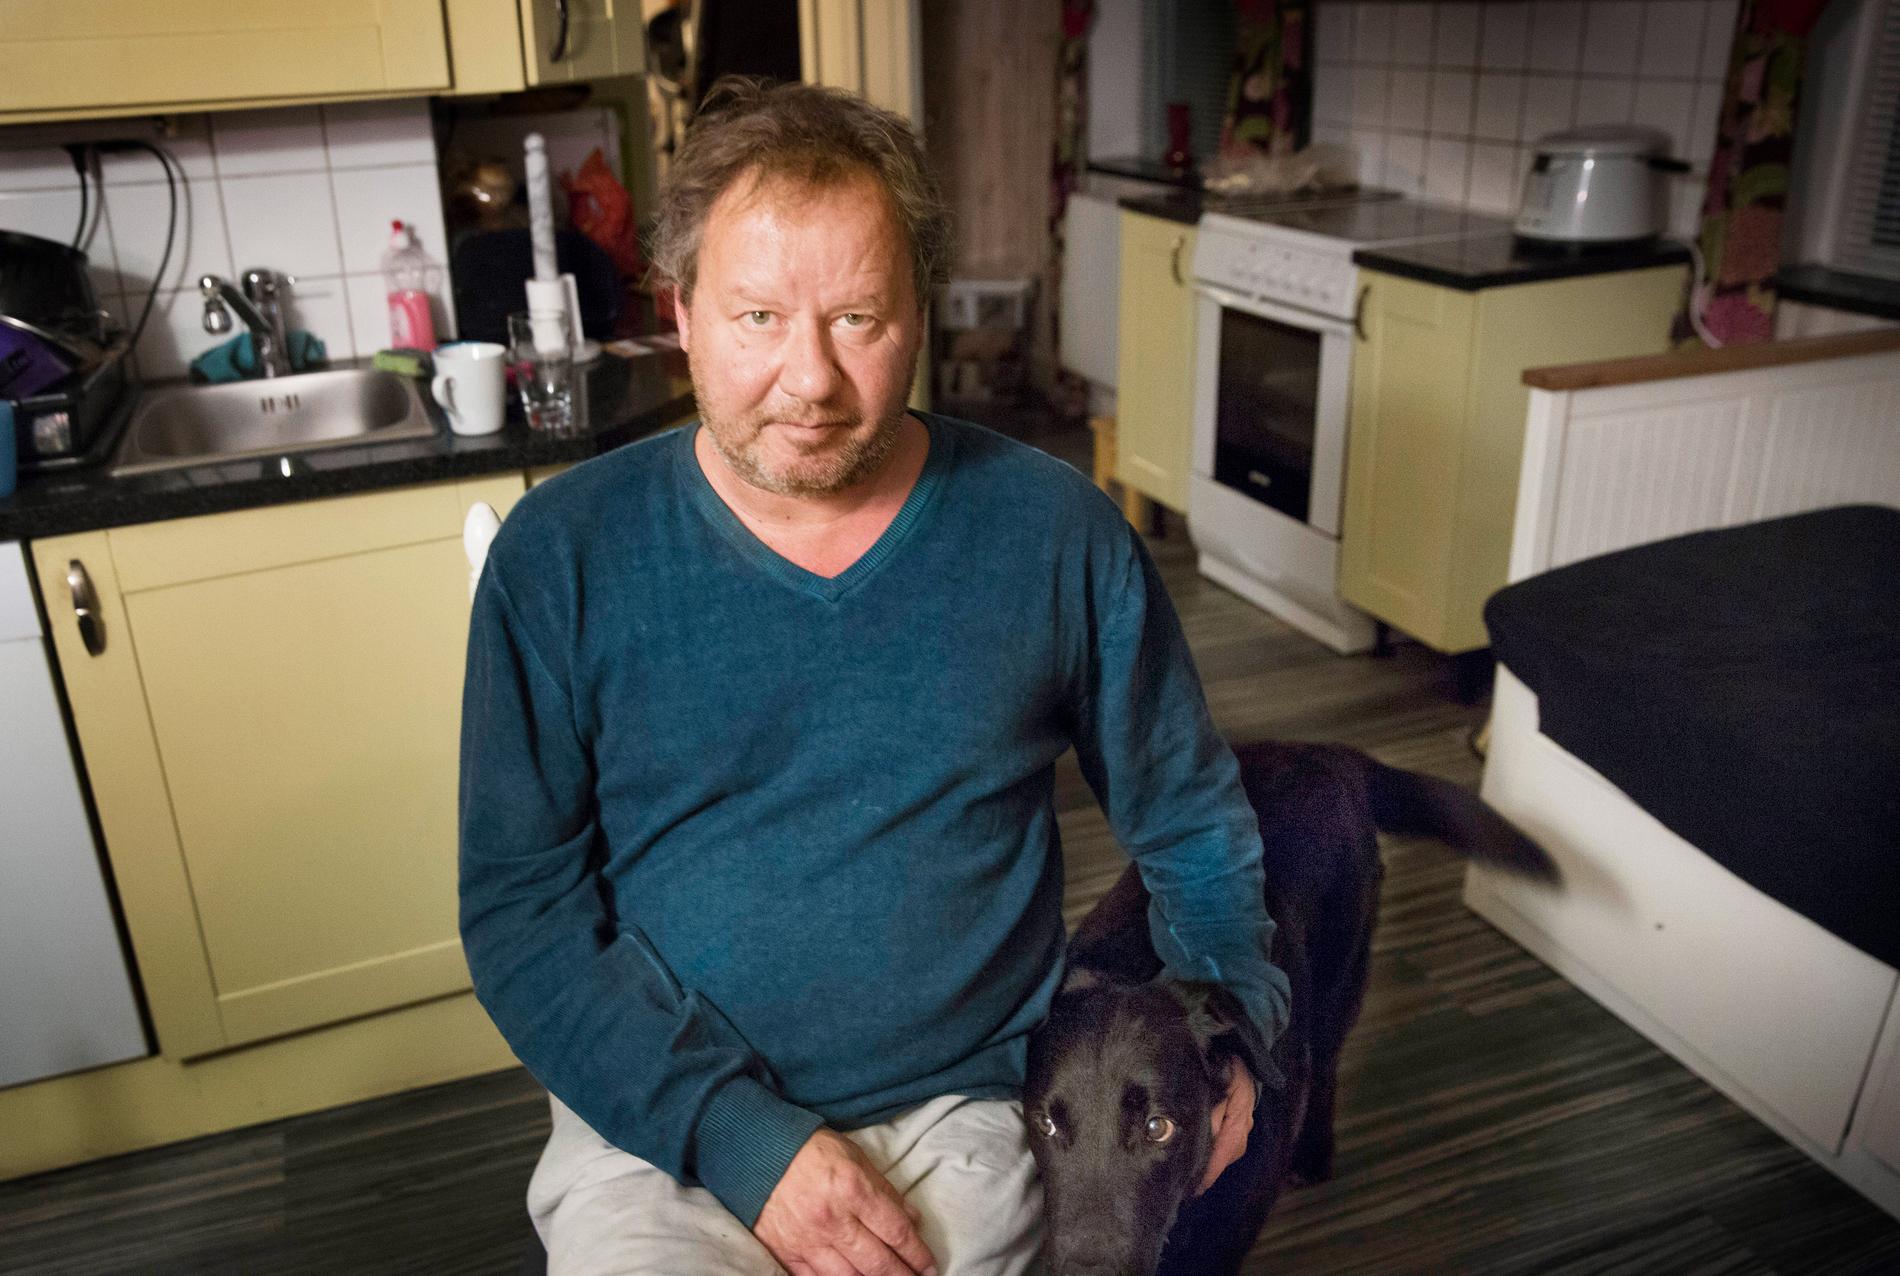 Thomas Hansson bor i huset precis bredvid mordplatsen. Han såg offret ligga på marken när han var ute och rastade sina hundar.